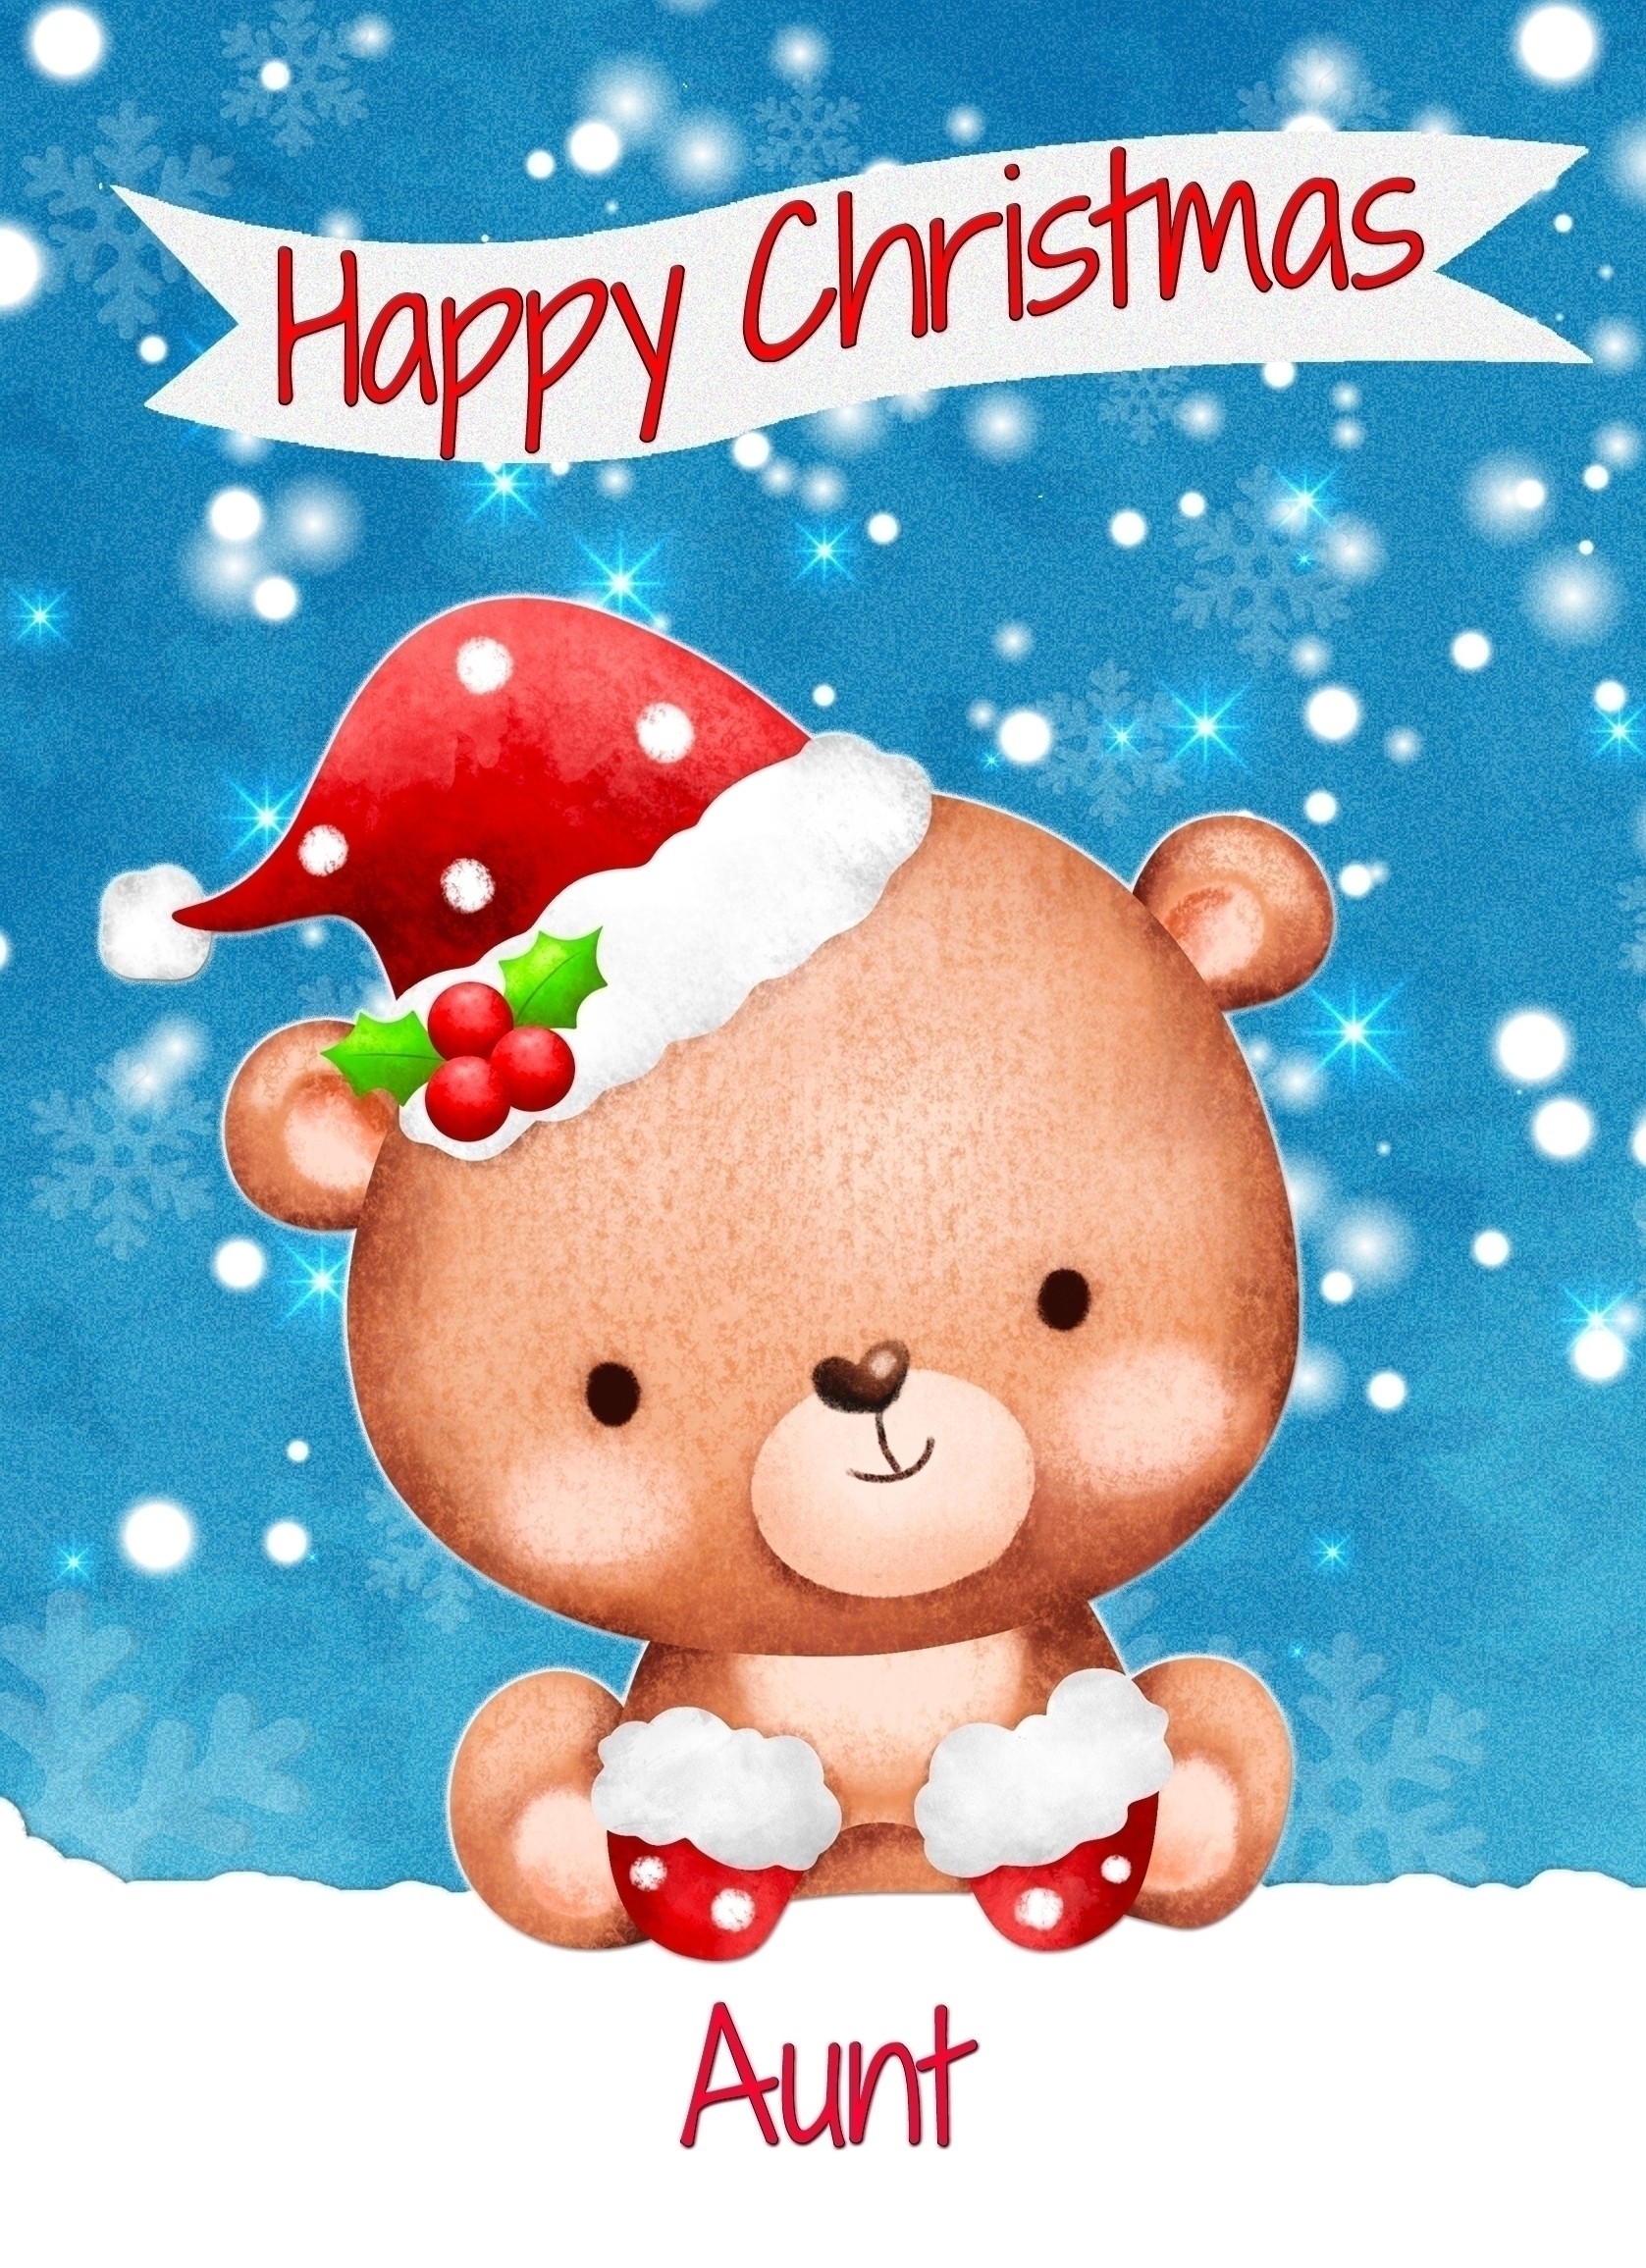 Christmas Card For Aunt (Happy Christmas, Bear)